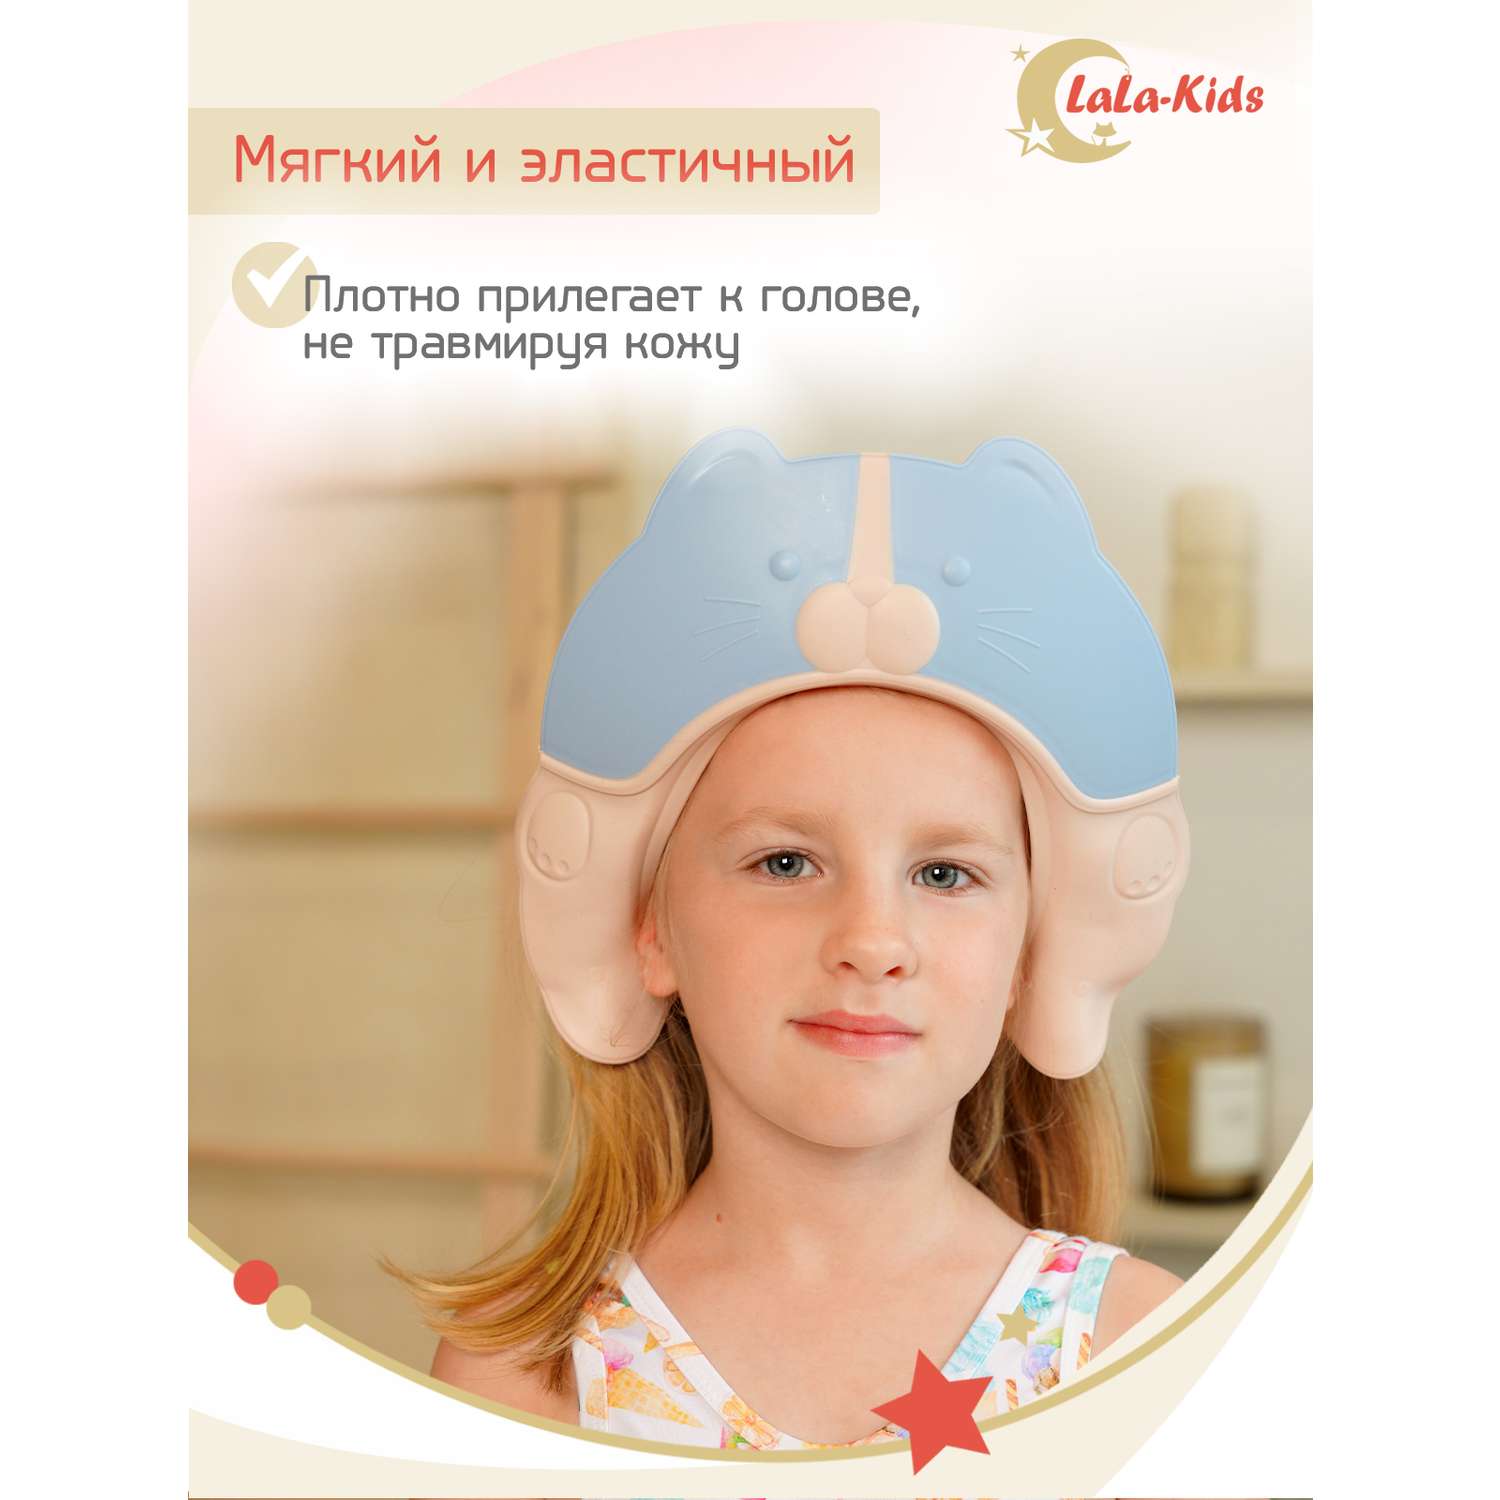 Козырек LaLa-Kids для мытья головы Котик с регулируемым размером - фото 4